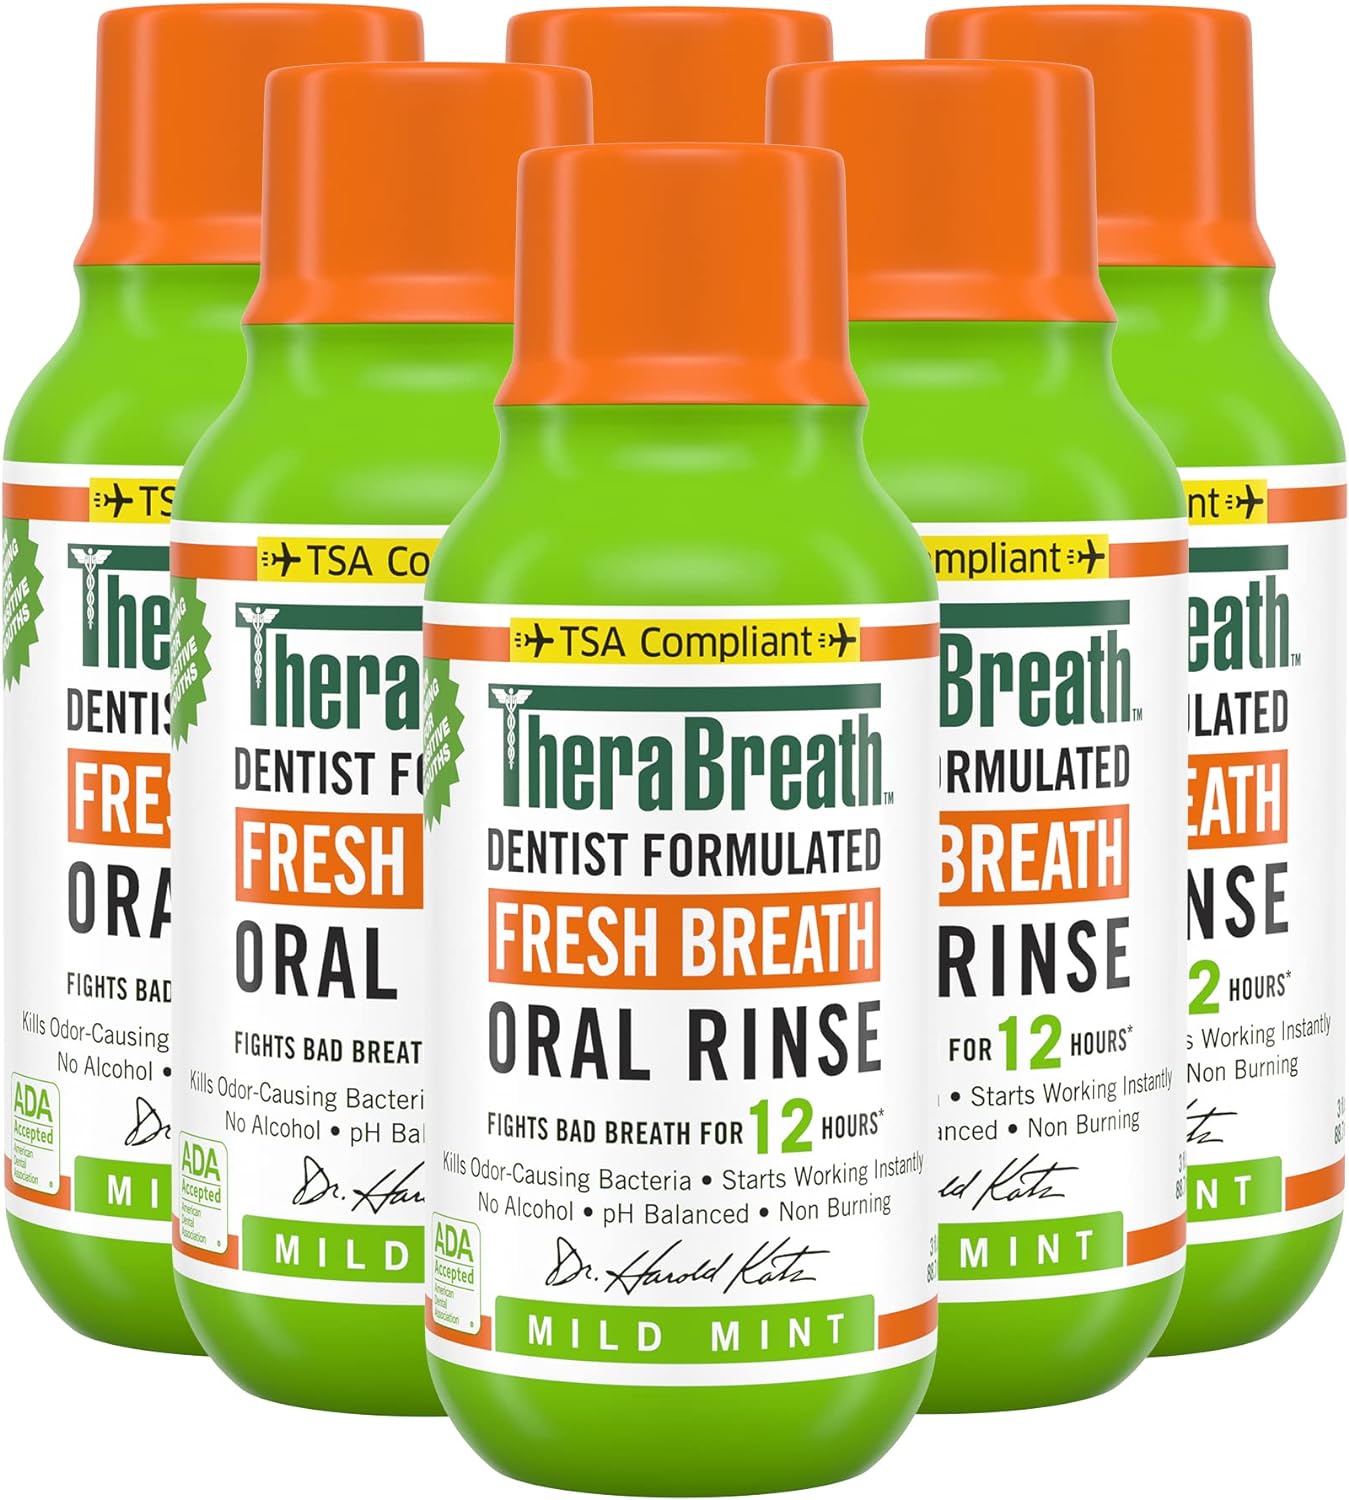 TheraBreath Fresh Breath Dentist Formulated Oral Rinse, Mild Mint, 3 Fl Oz (Pack of 6)